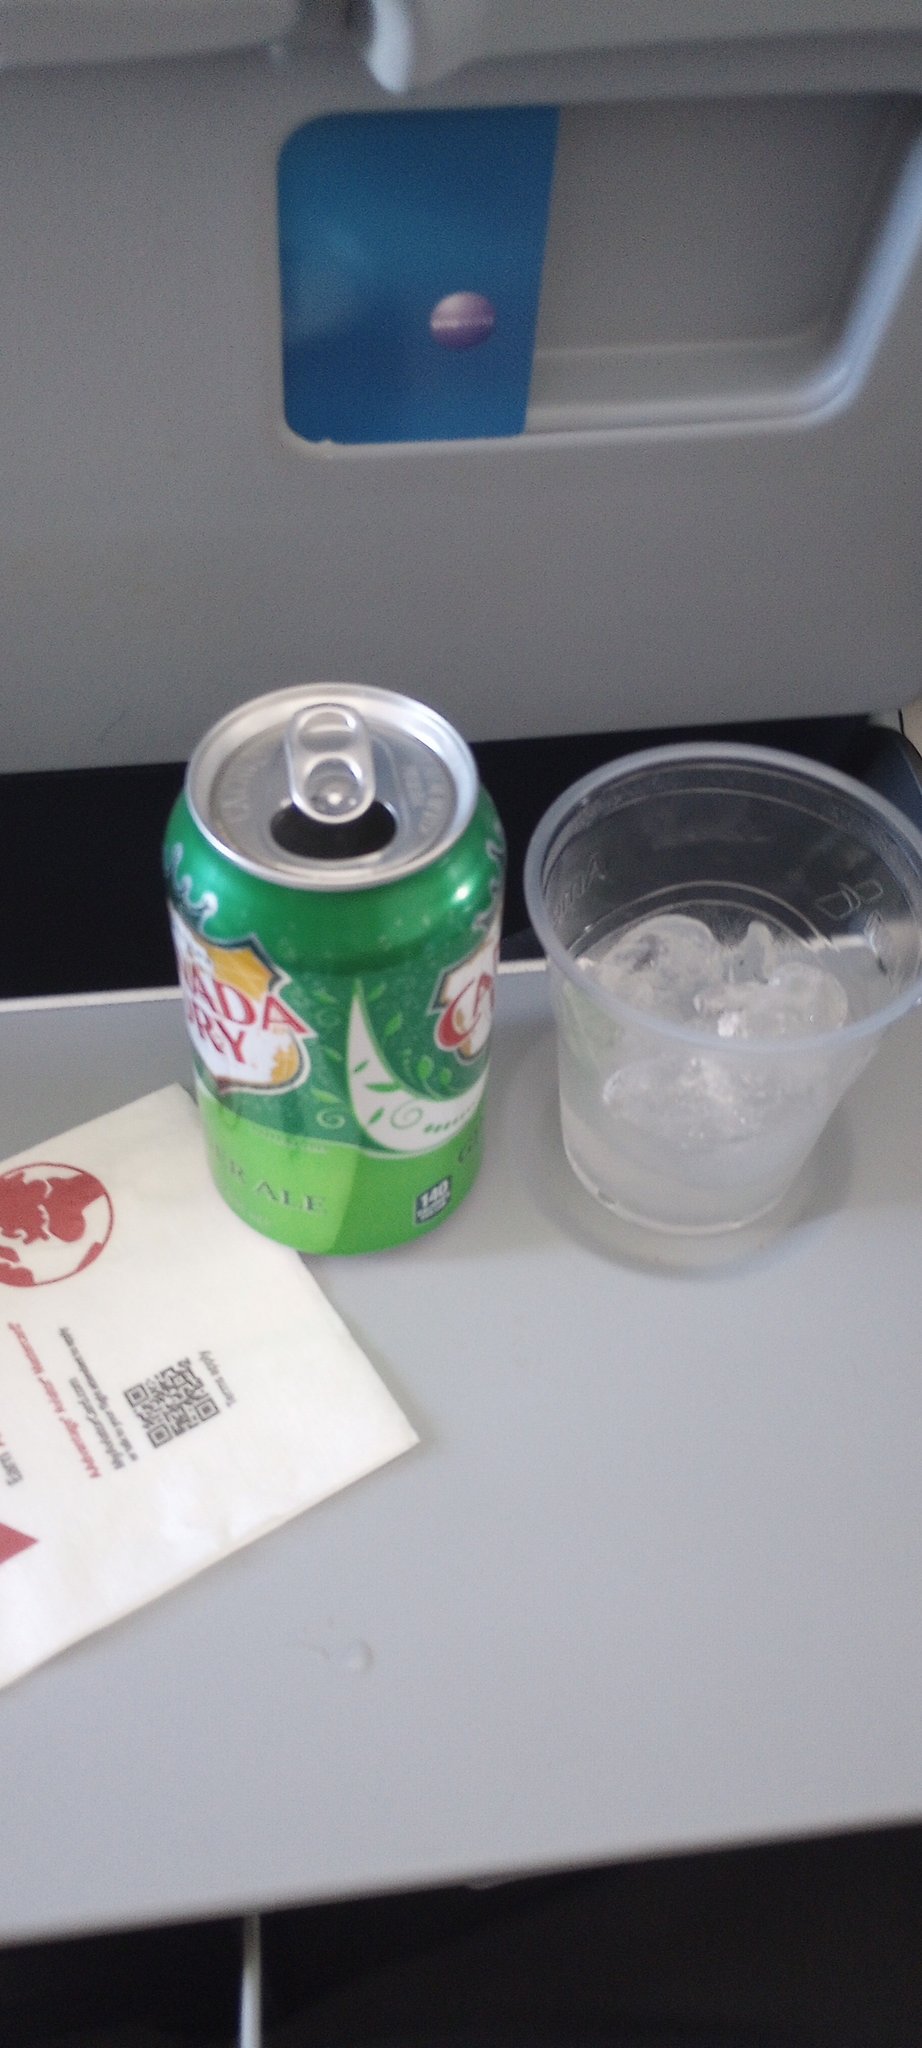 許多網民也表示在航機上飲薑汁汽水風味更佳。